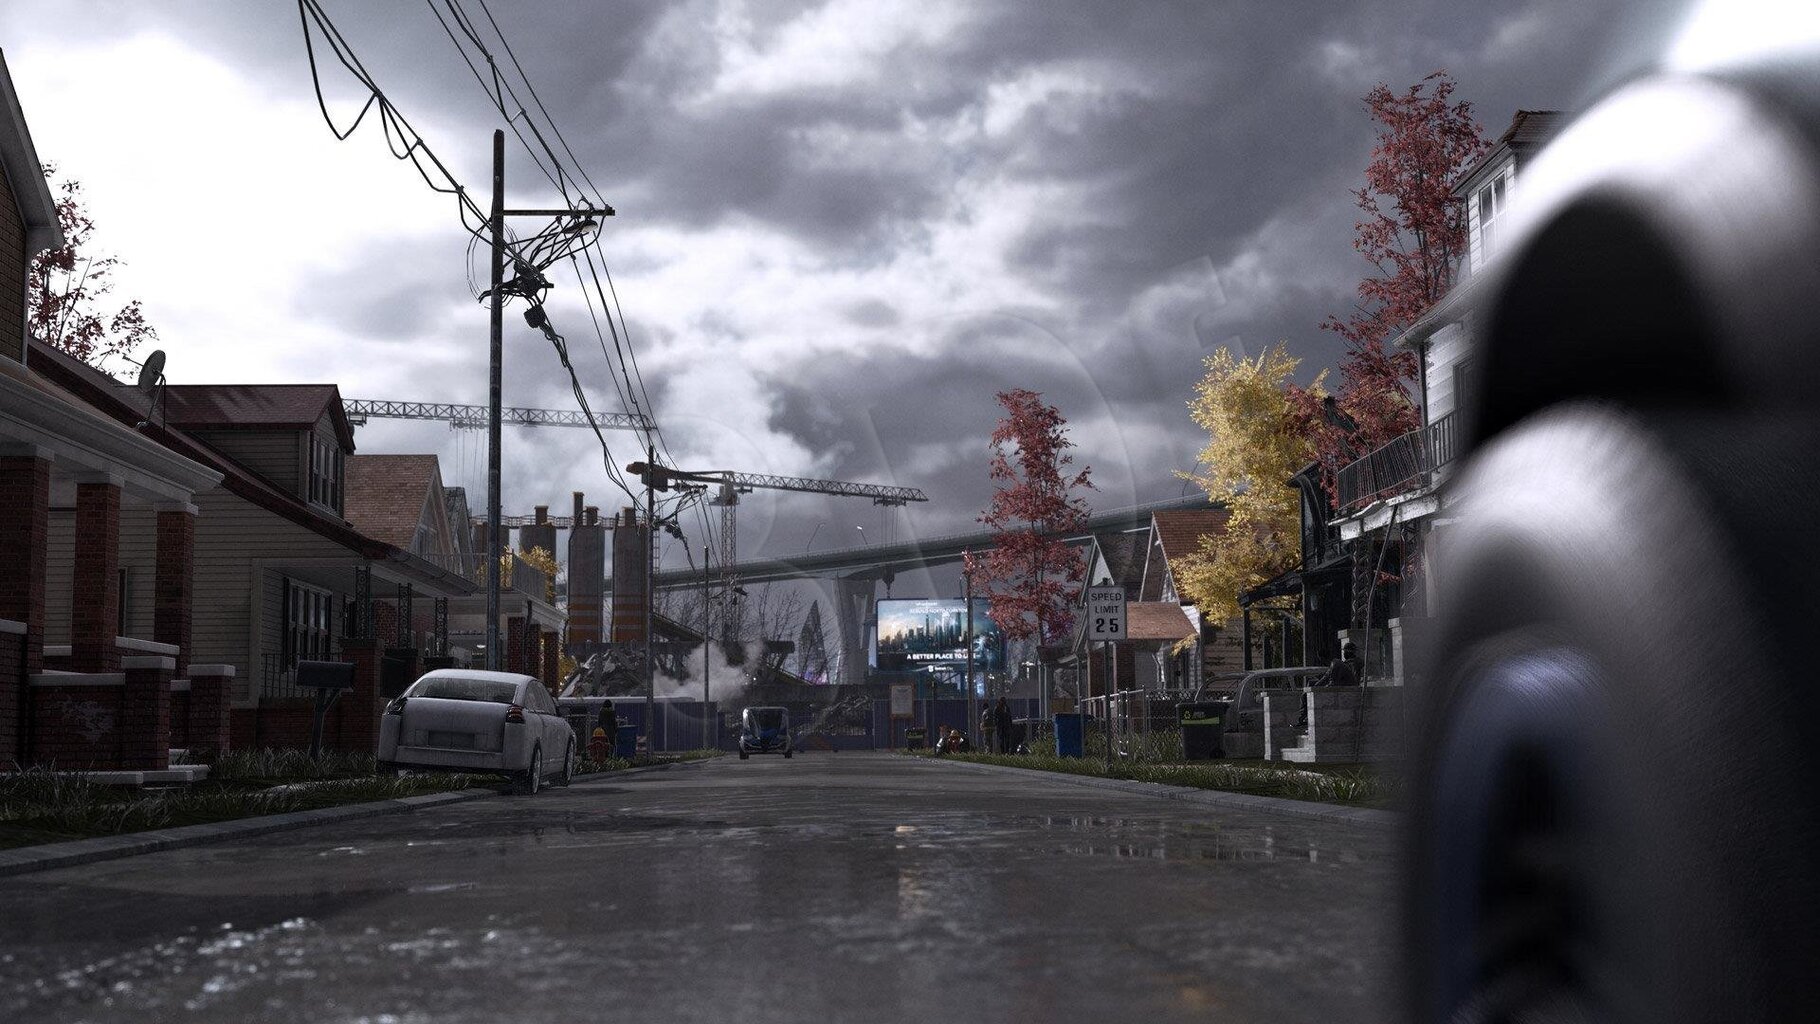 Detroit Become Human, PS4 cena un informācija | Datorspēles | 220.lv